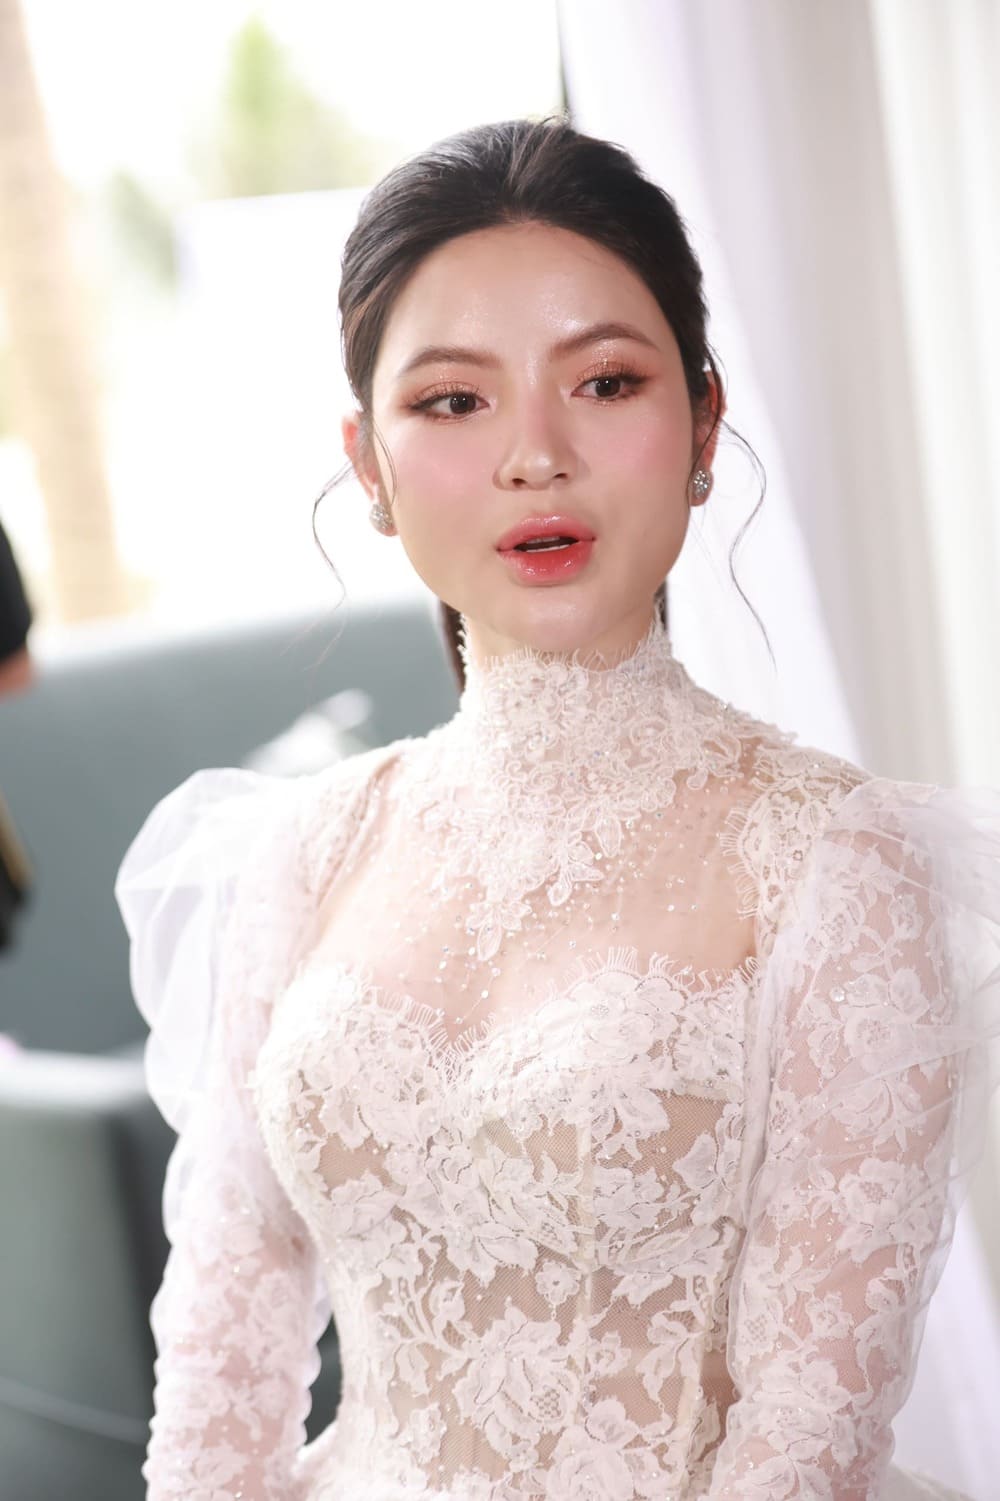 Cận cảnh váy cưới đẹp 'nín thở' của công chúa béo Quỳnh Anh